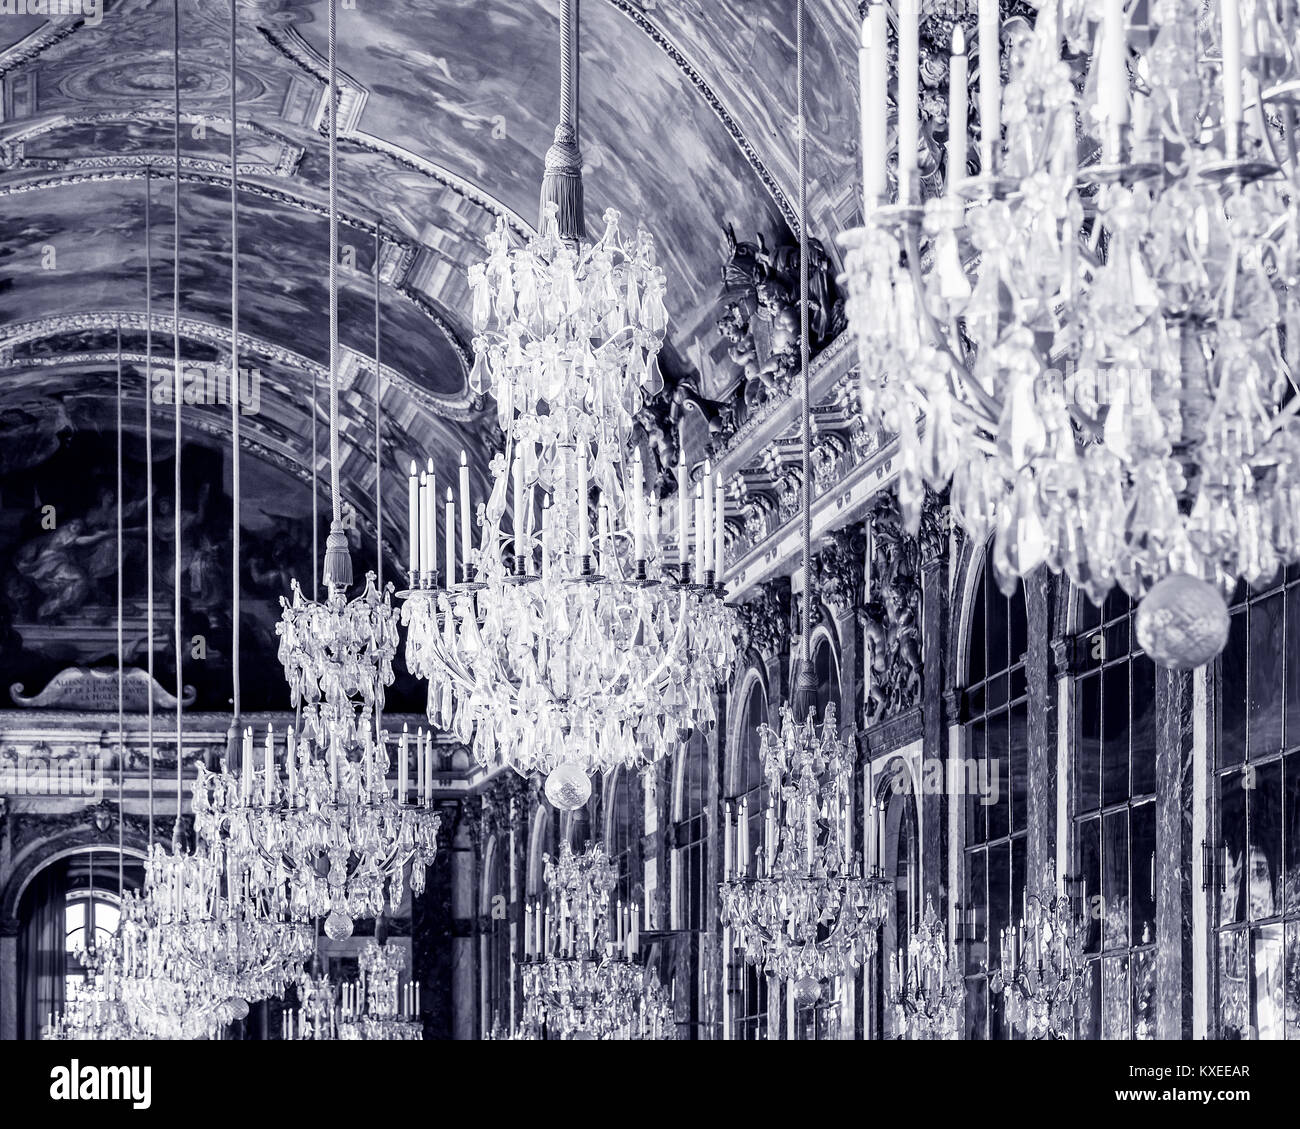 Et des lustres au plafond (Lustre) dans la galerie des Glaces, Château de Versailles, France Banque D'Images